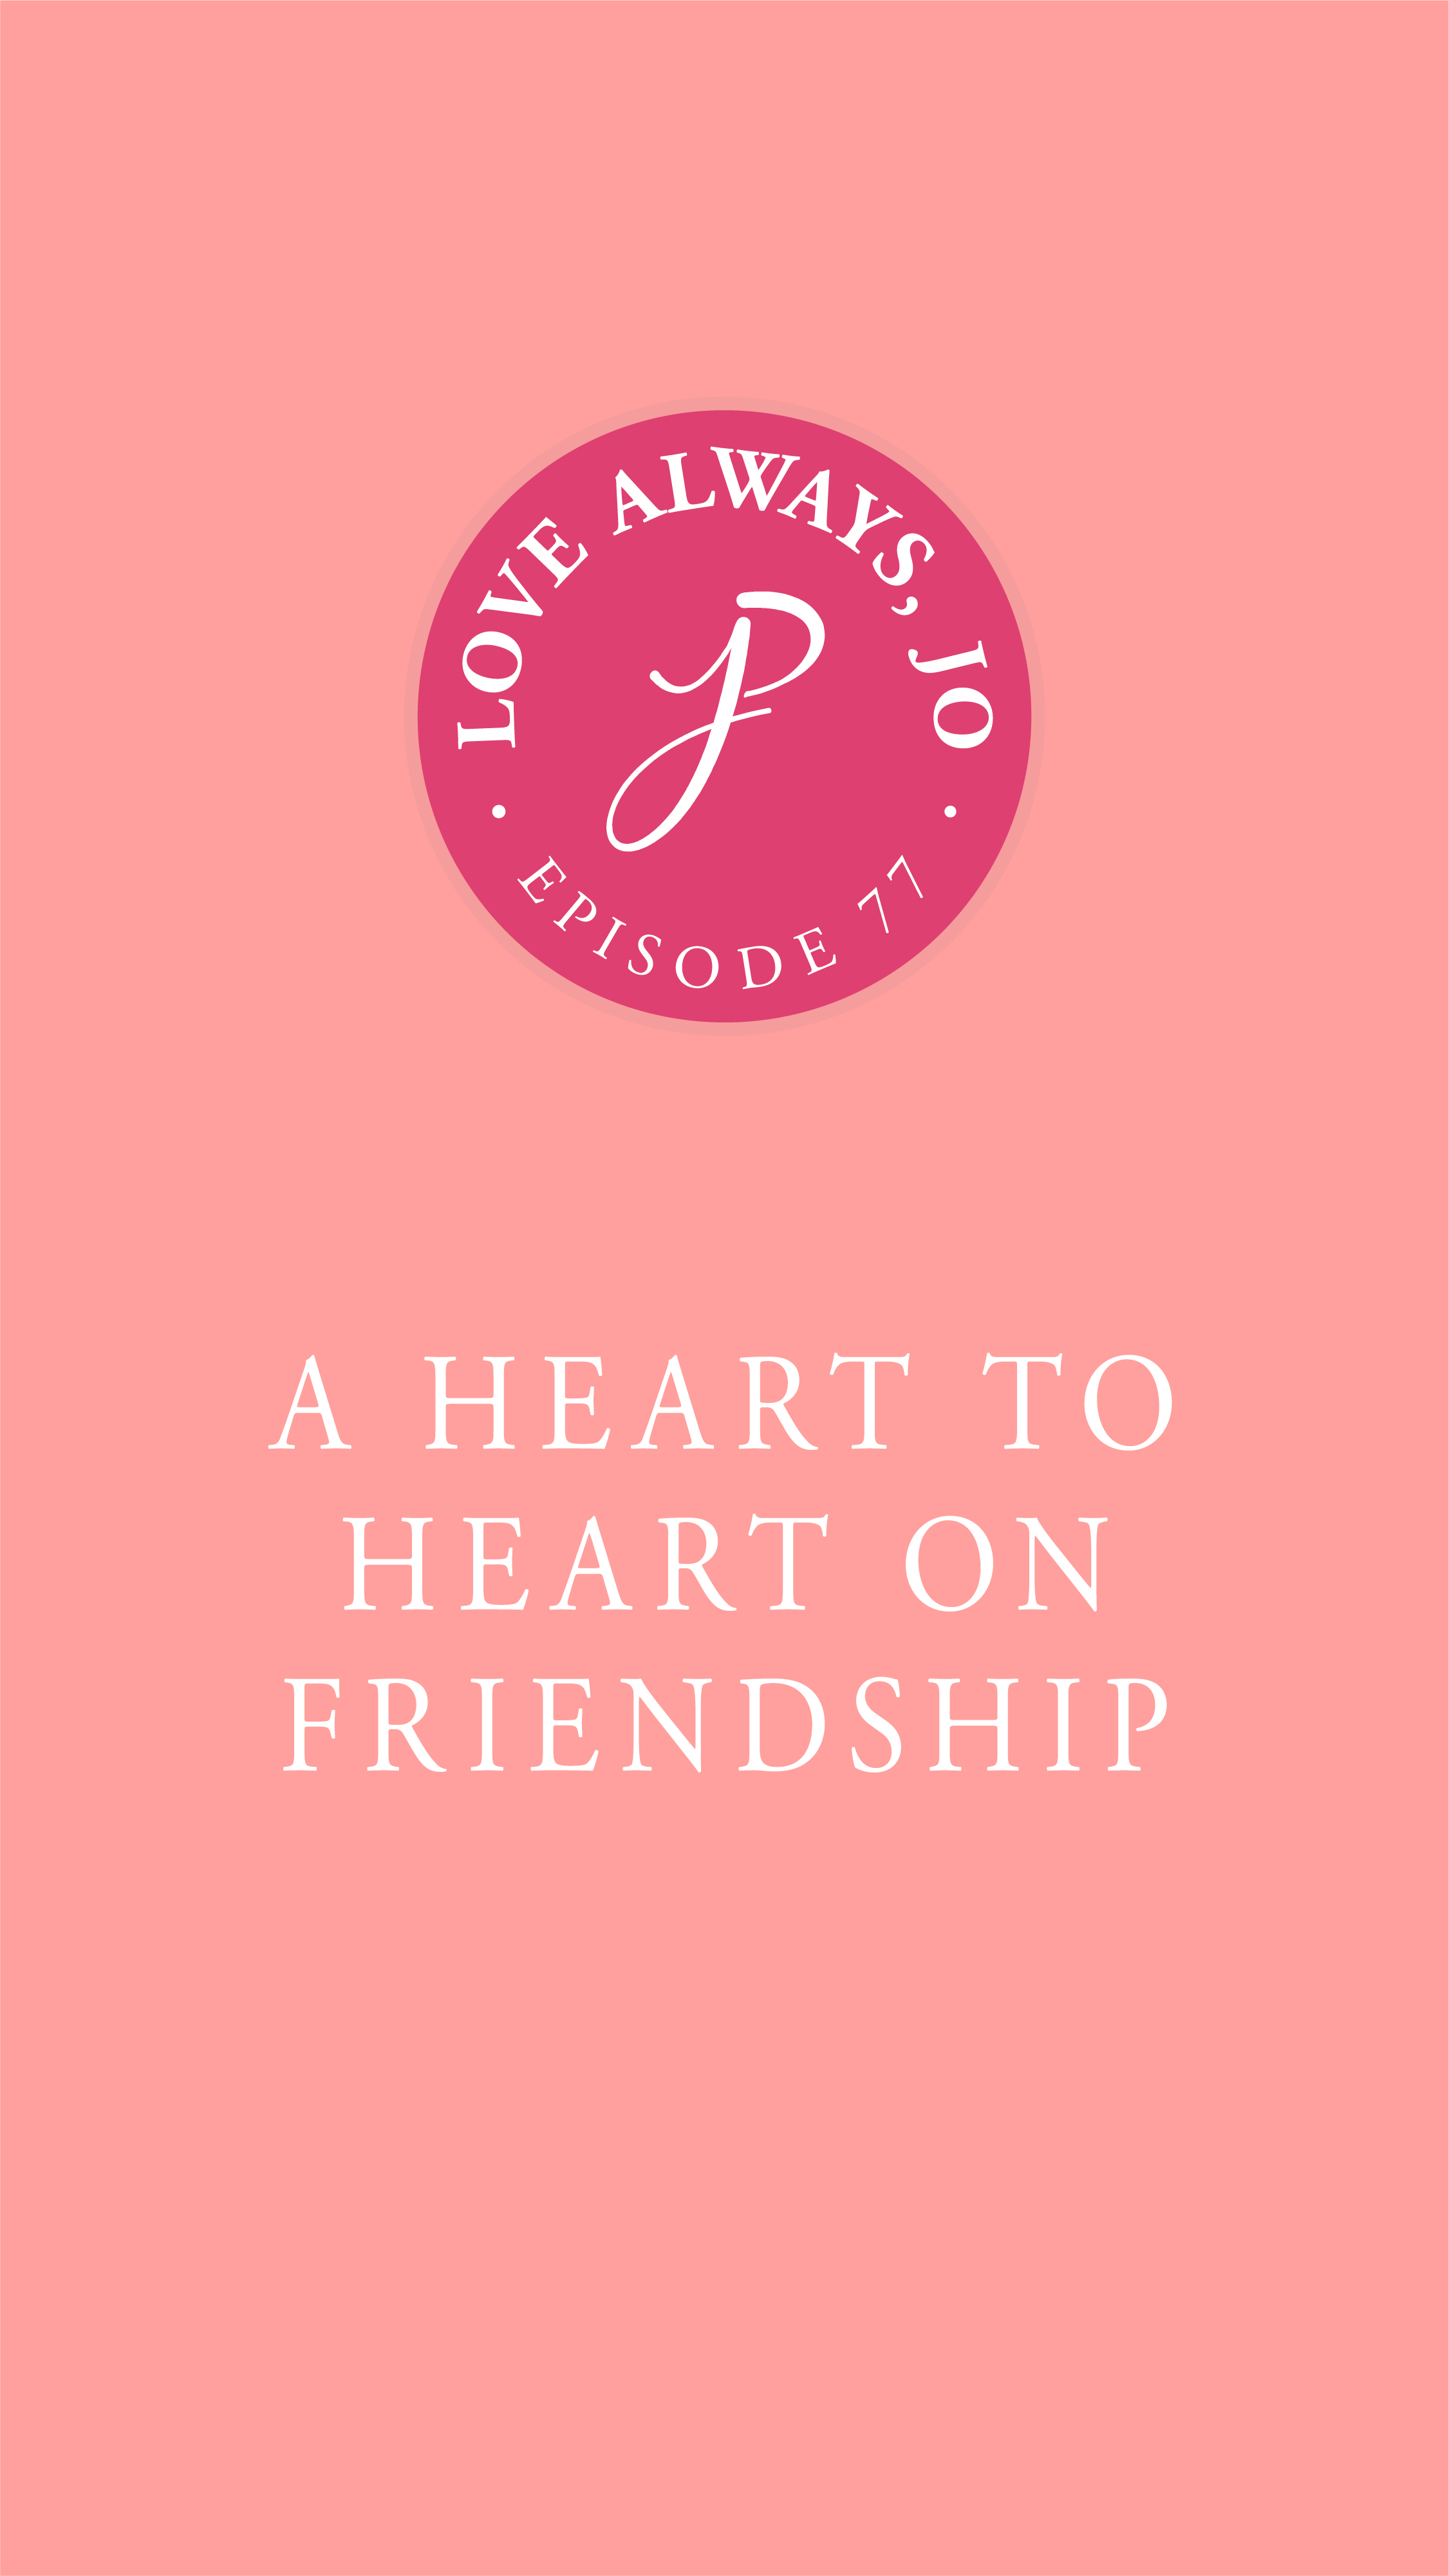 Love Always Jo Episode 77 Heart to Heart on Friendship